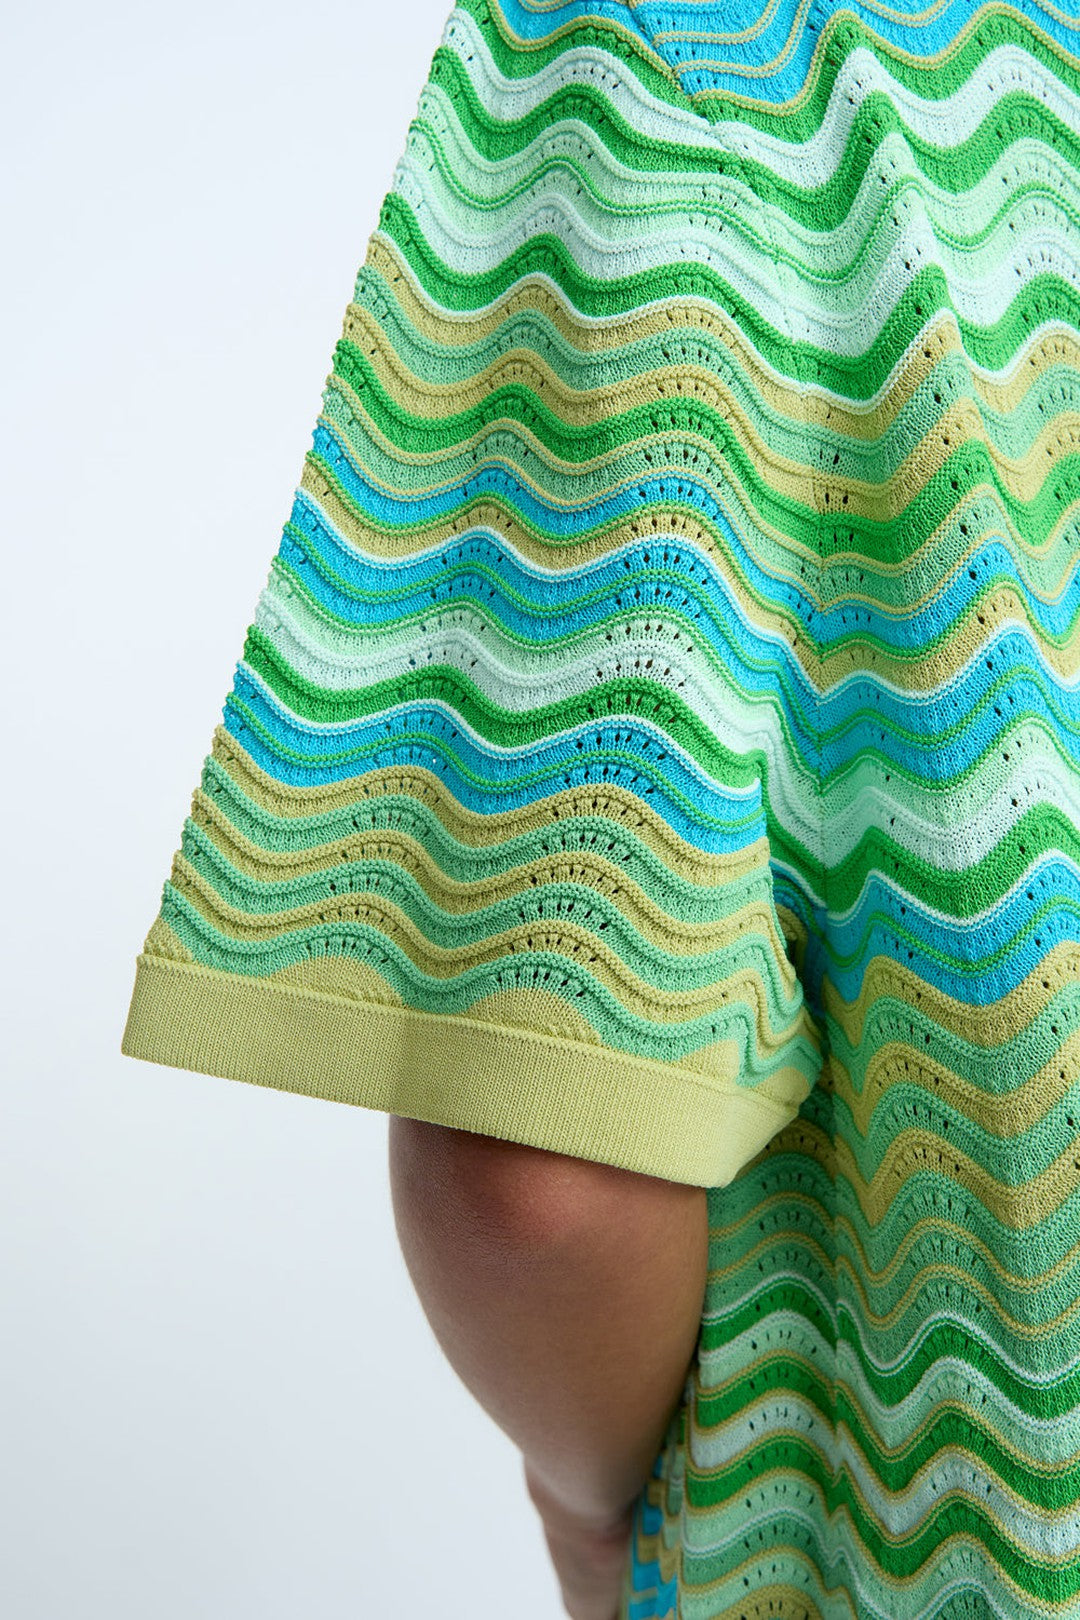 Rayne ripple knit shirt